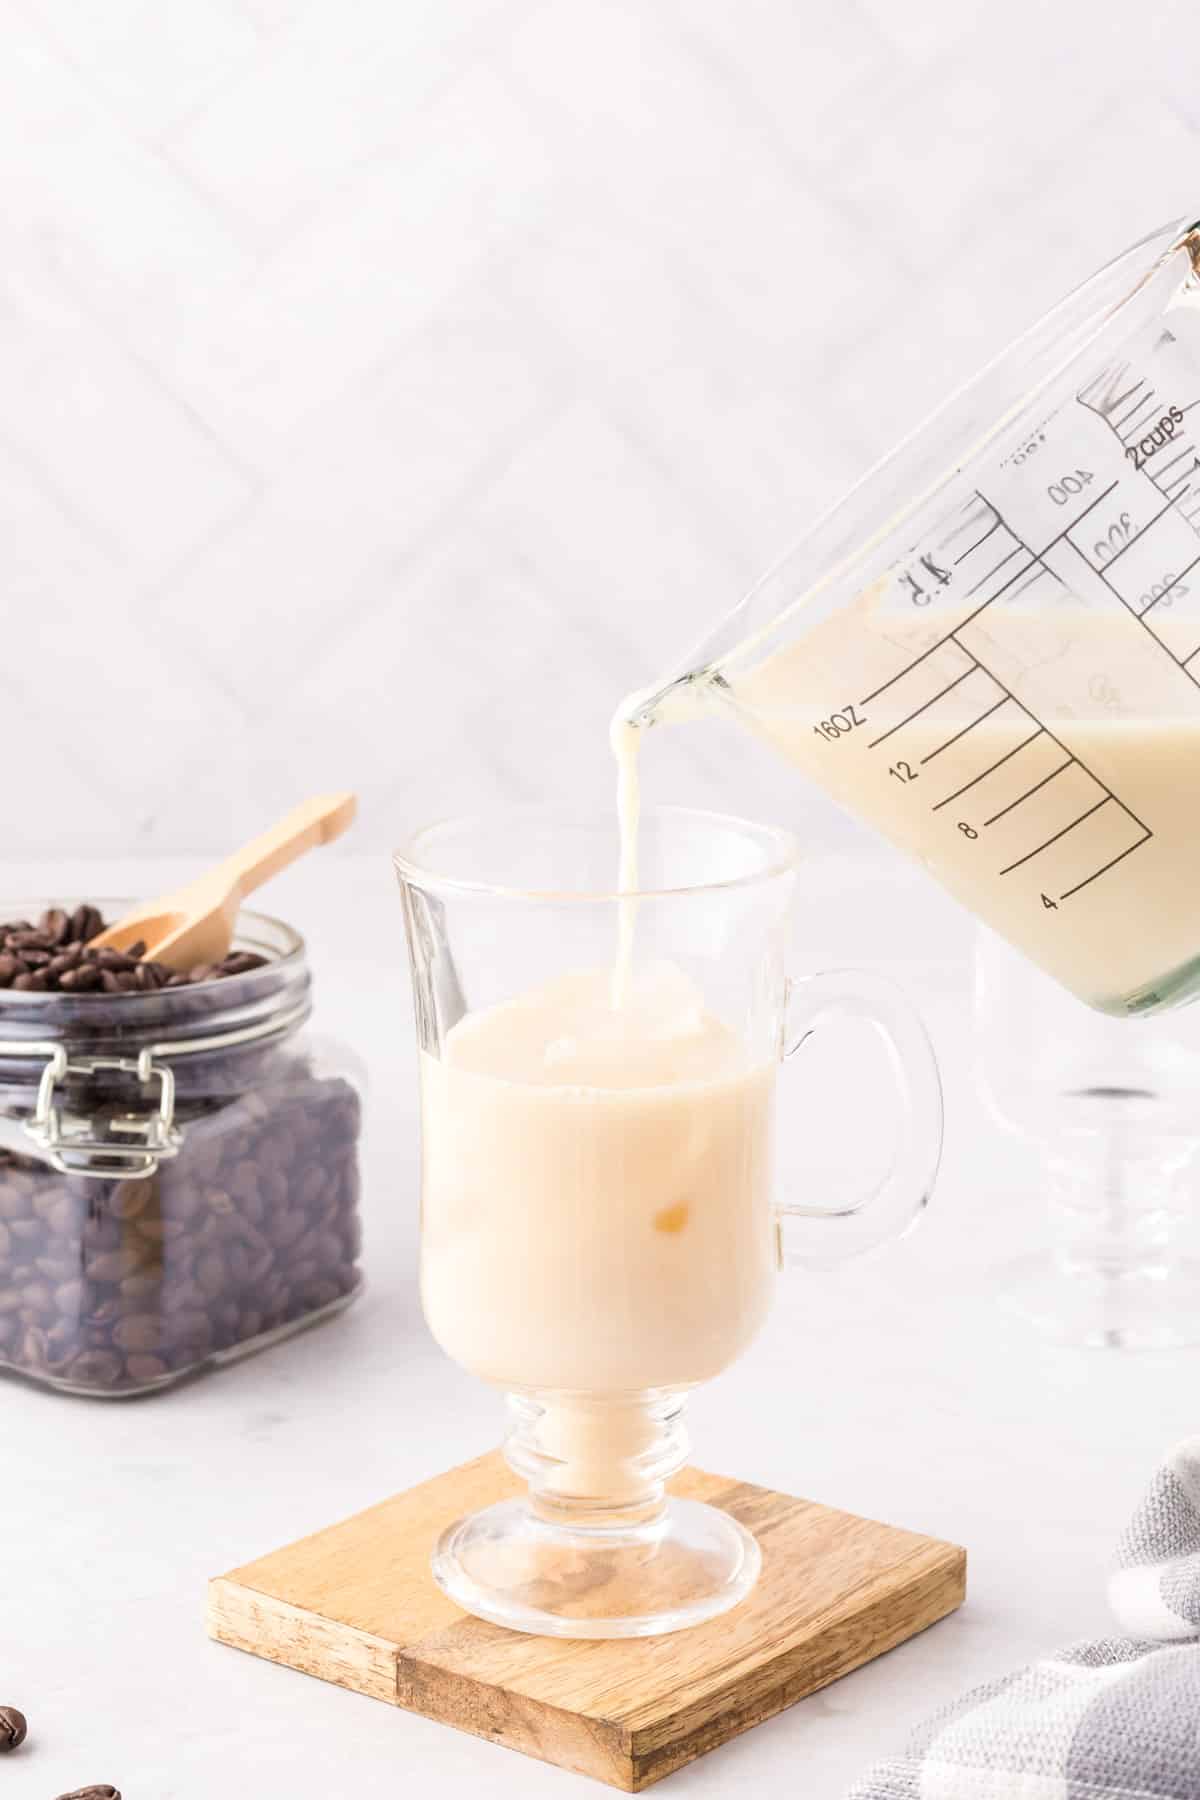 Ice and milk added to a coffee mug.